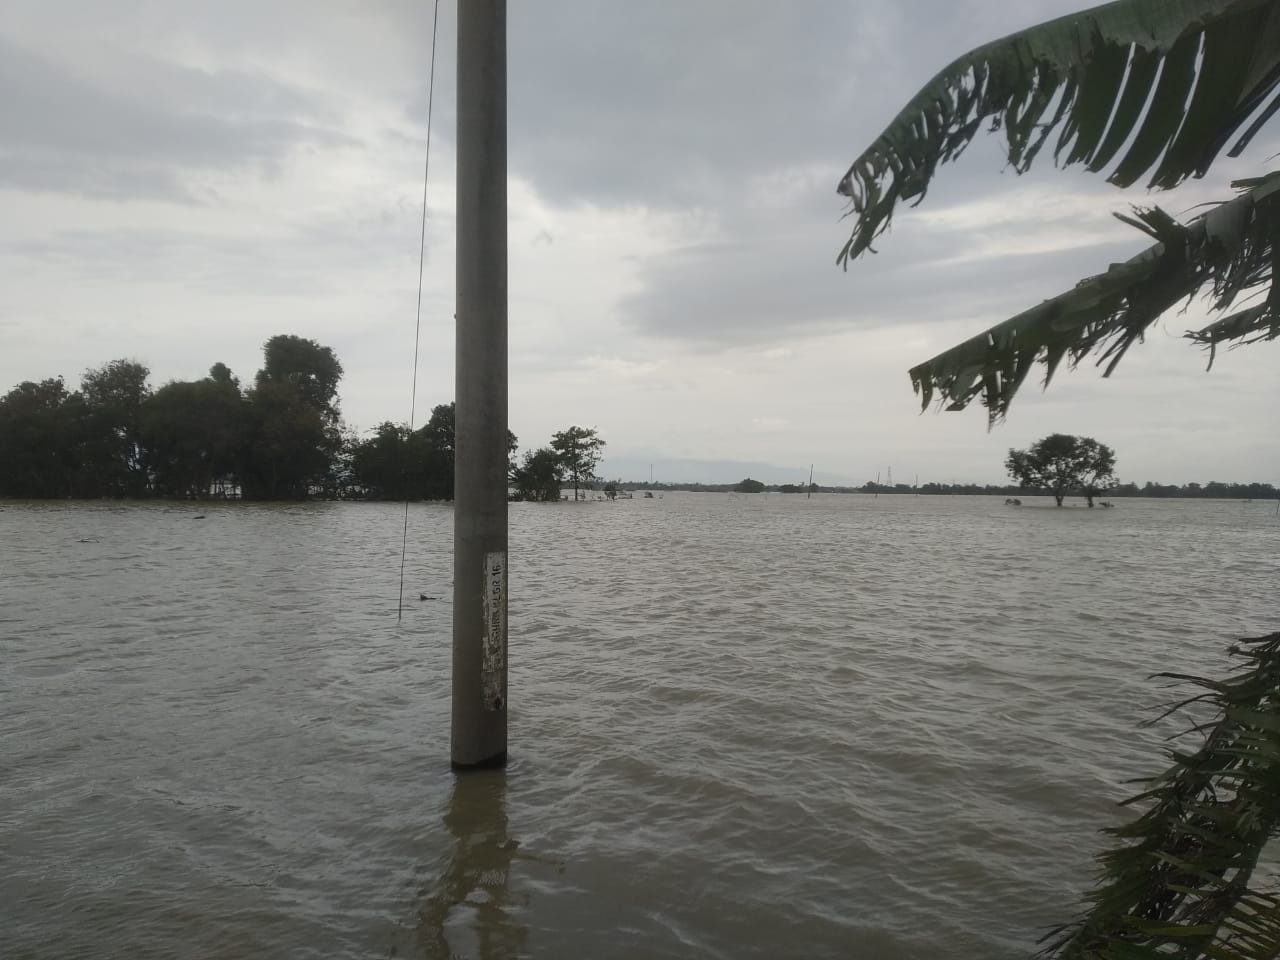 Banjir Luapan Sungai Citarum, Karawang. Update : 23 Februari 2021